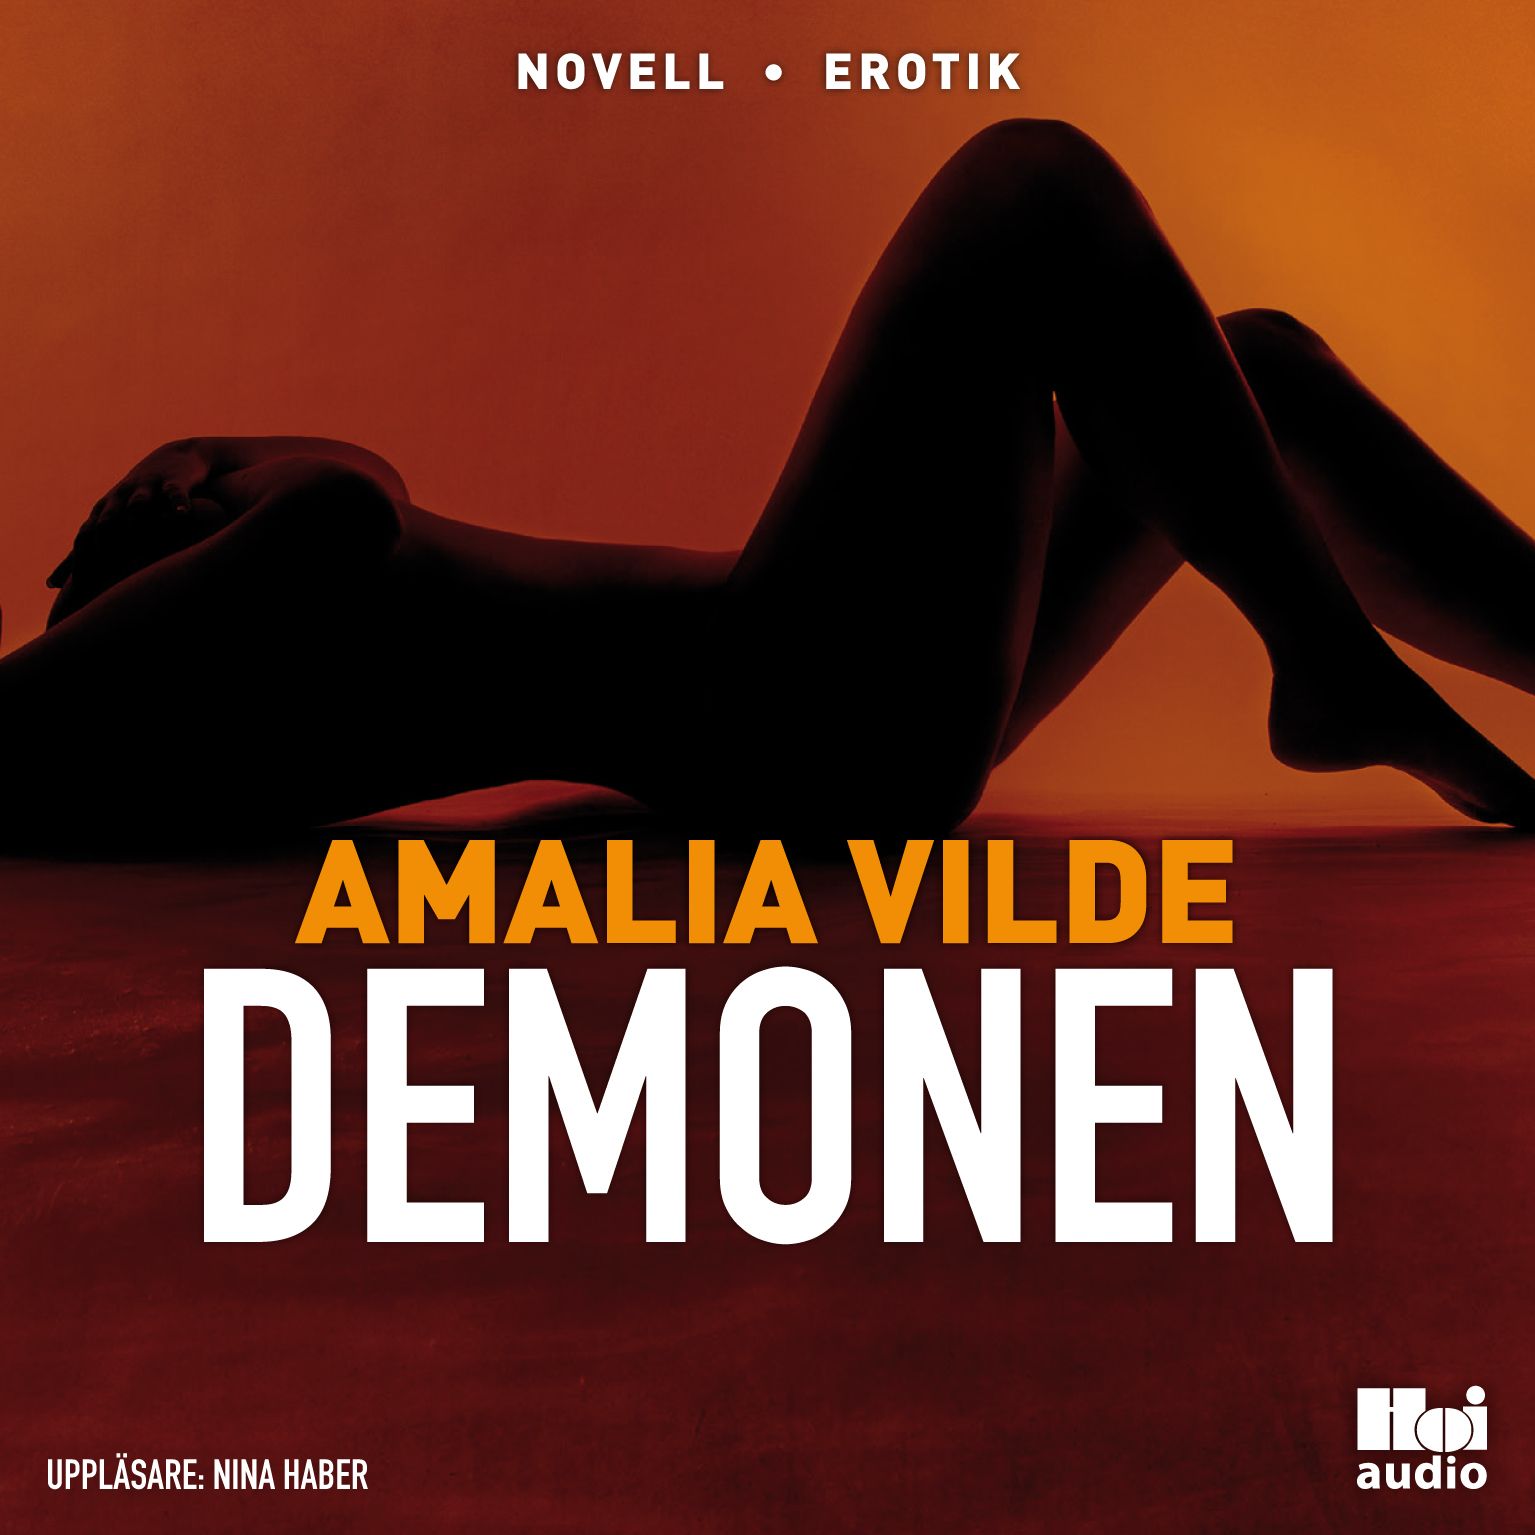 Demonen, lydbog af Amalia Vilde